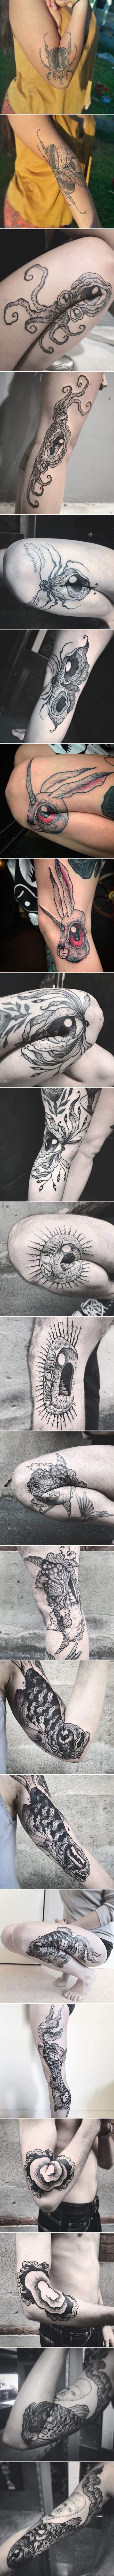 Genijalne tetovaže koje izgledaju drukčije nakon što osobe ispruže ruku ili nogu